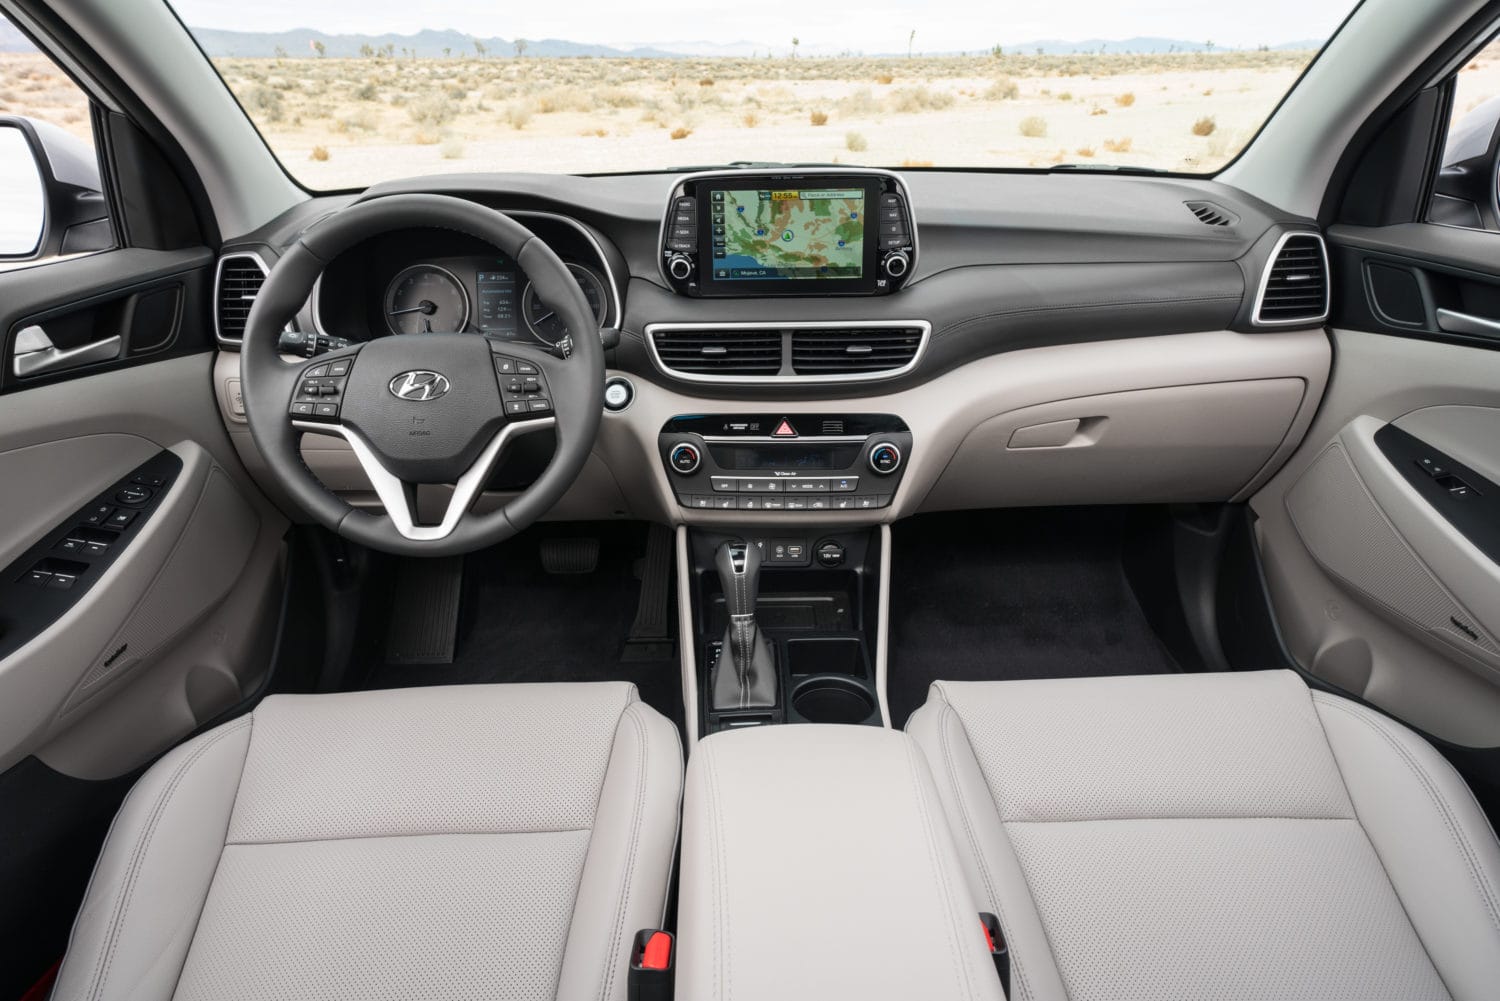 2019 Hyundai Tucson A CUV To Consider